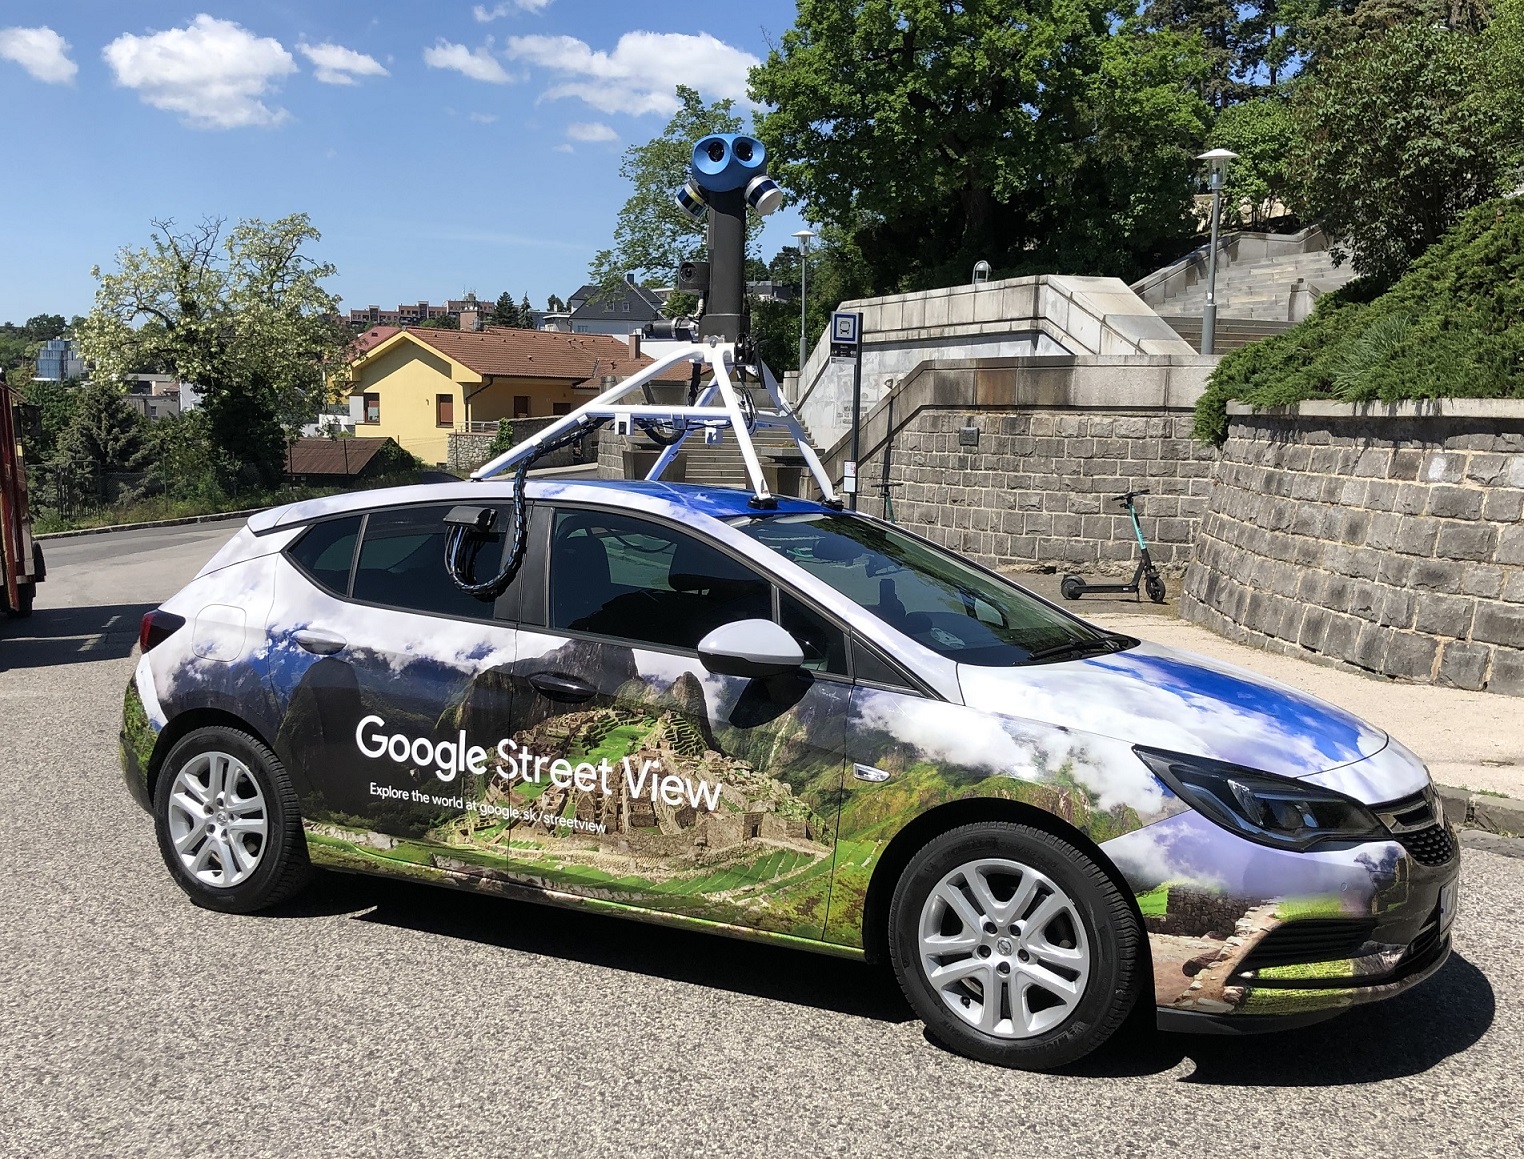 Automobily Google Street View sa vrátia do ulíc Slovenska